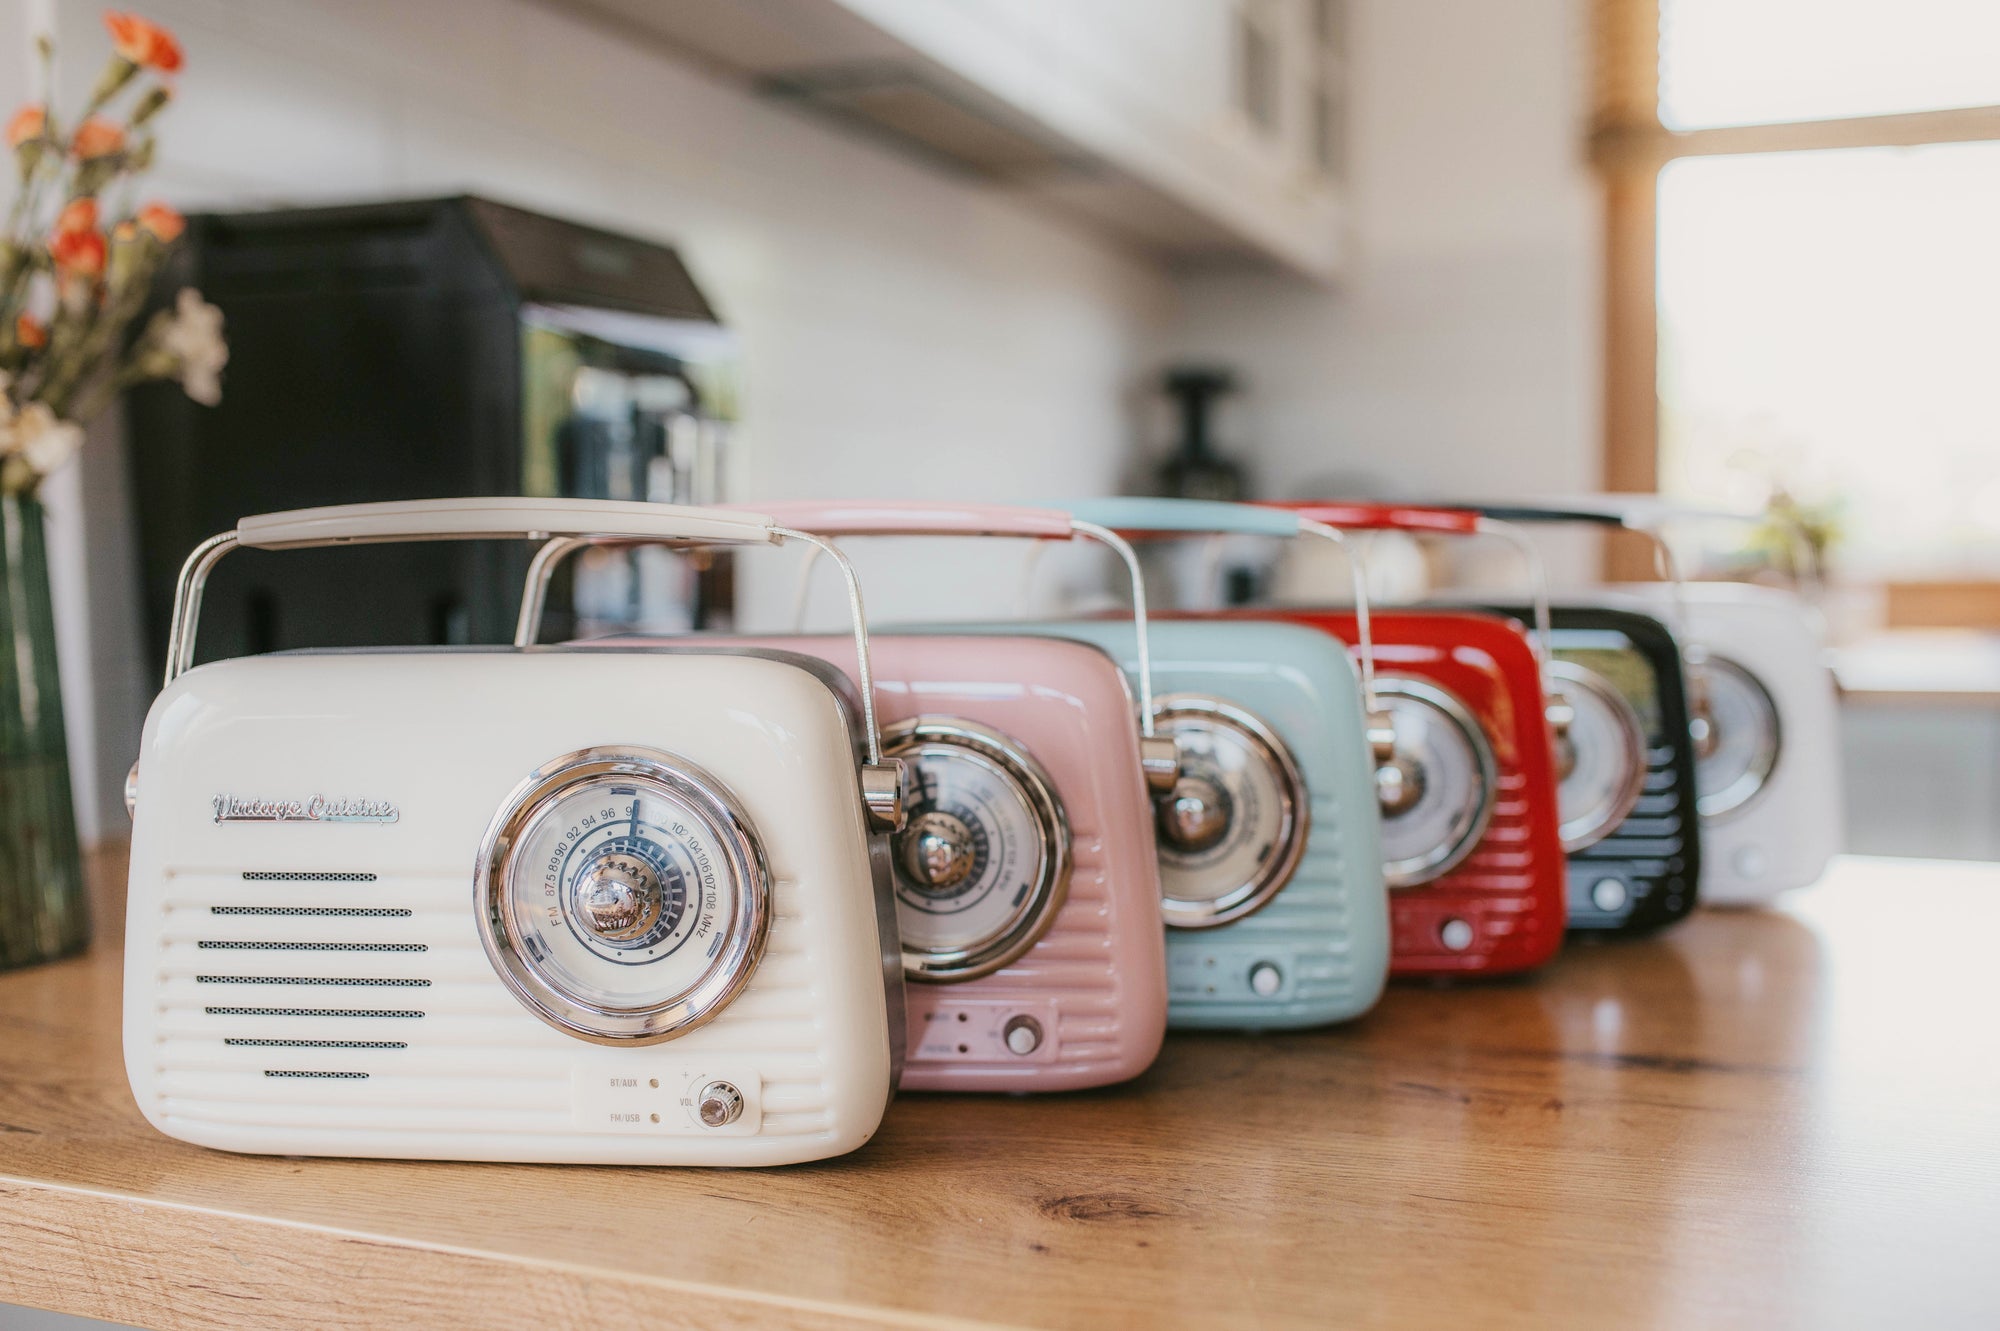 Radio retrò con altoparlante bluetooth: il bestseller nella tua cucina!